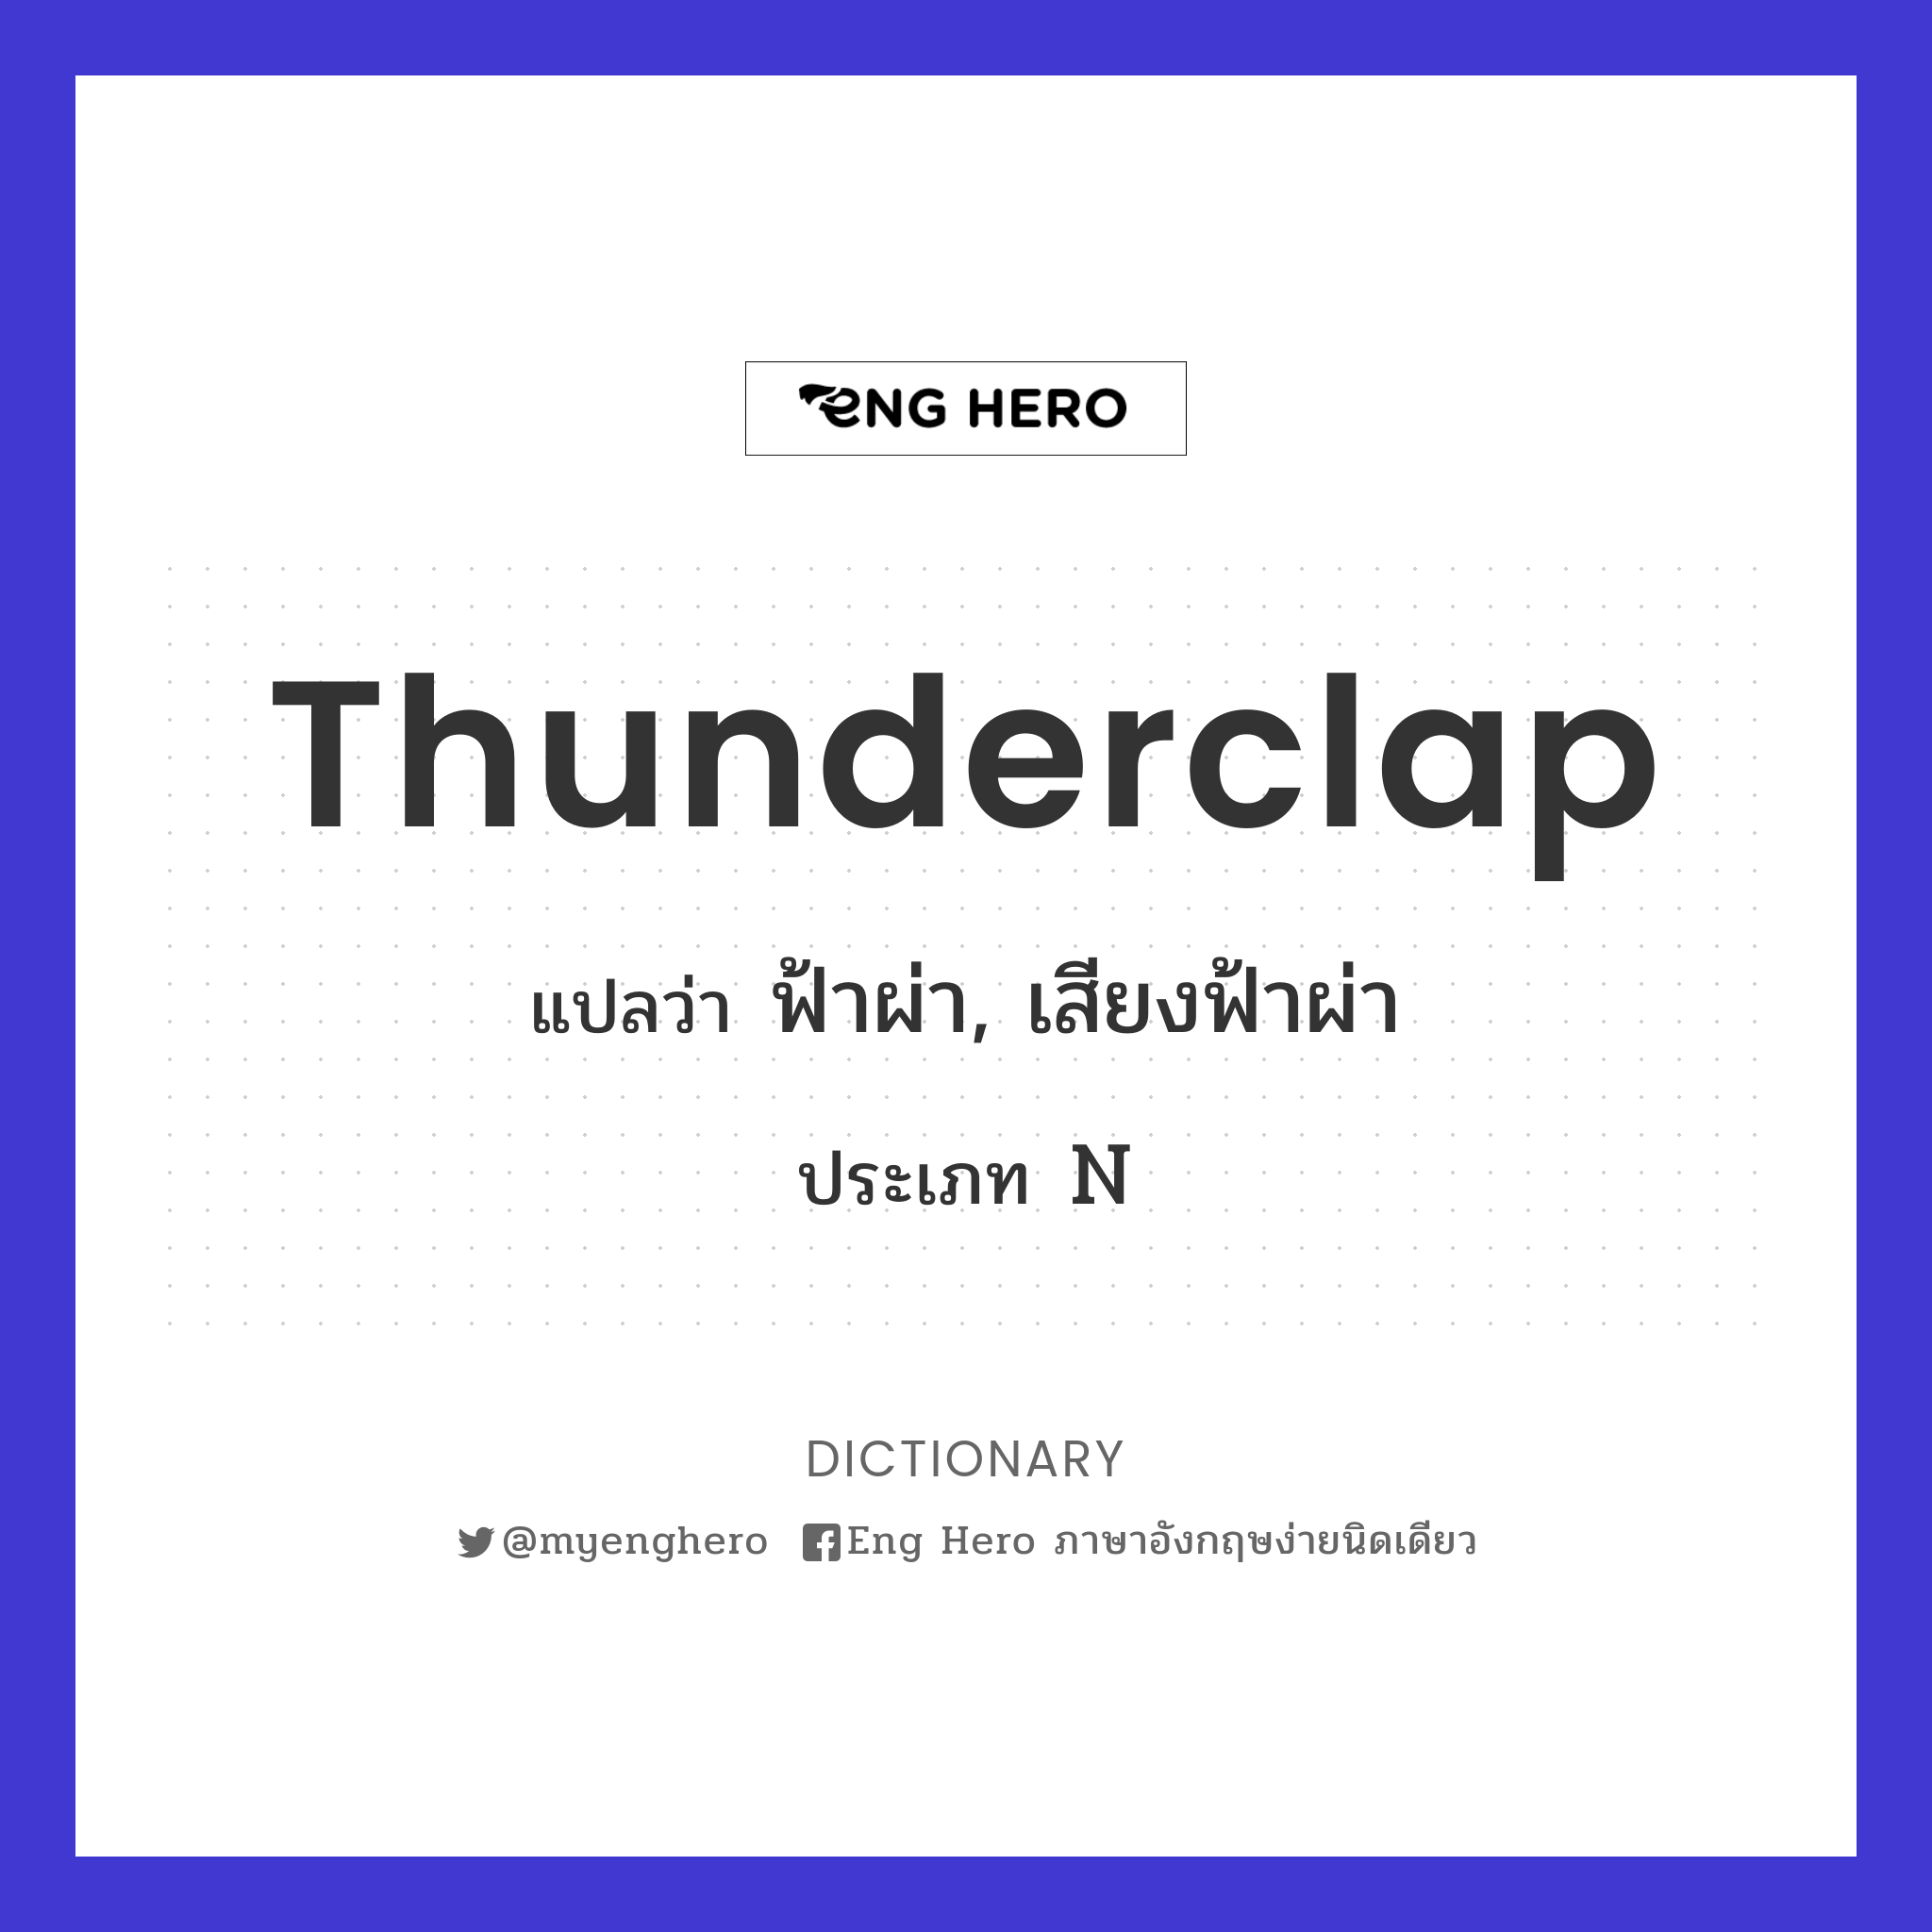 thunderclap